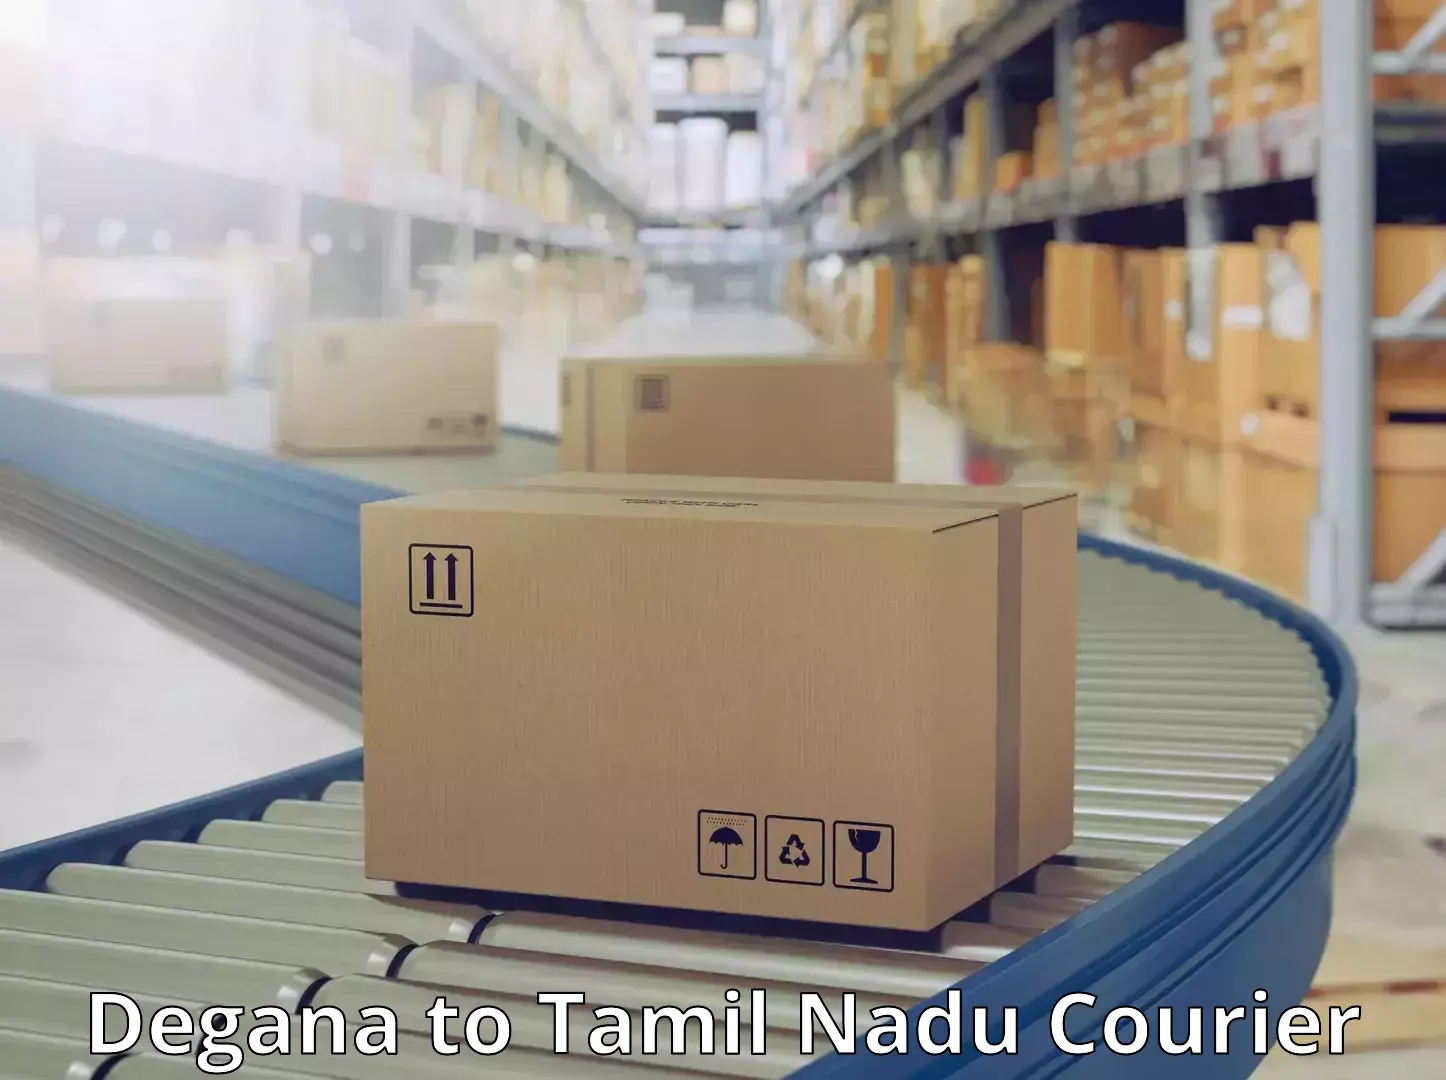 Urgent courier needs Degana to Tamil Nadu